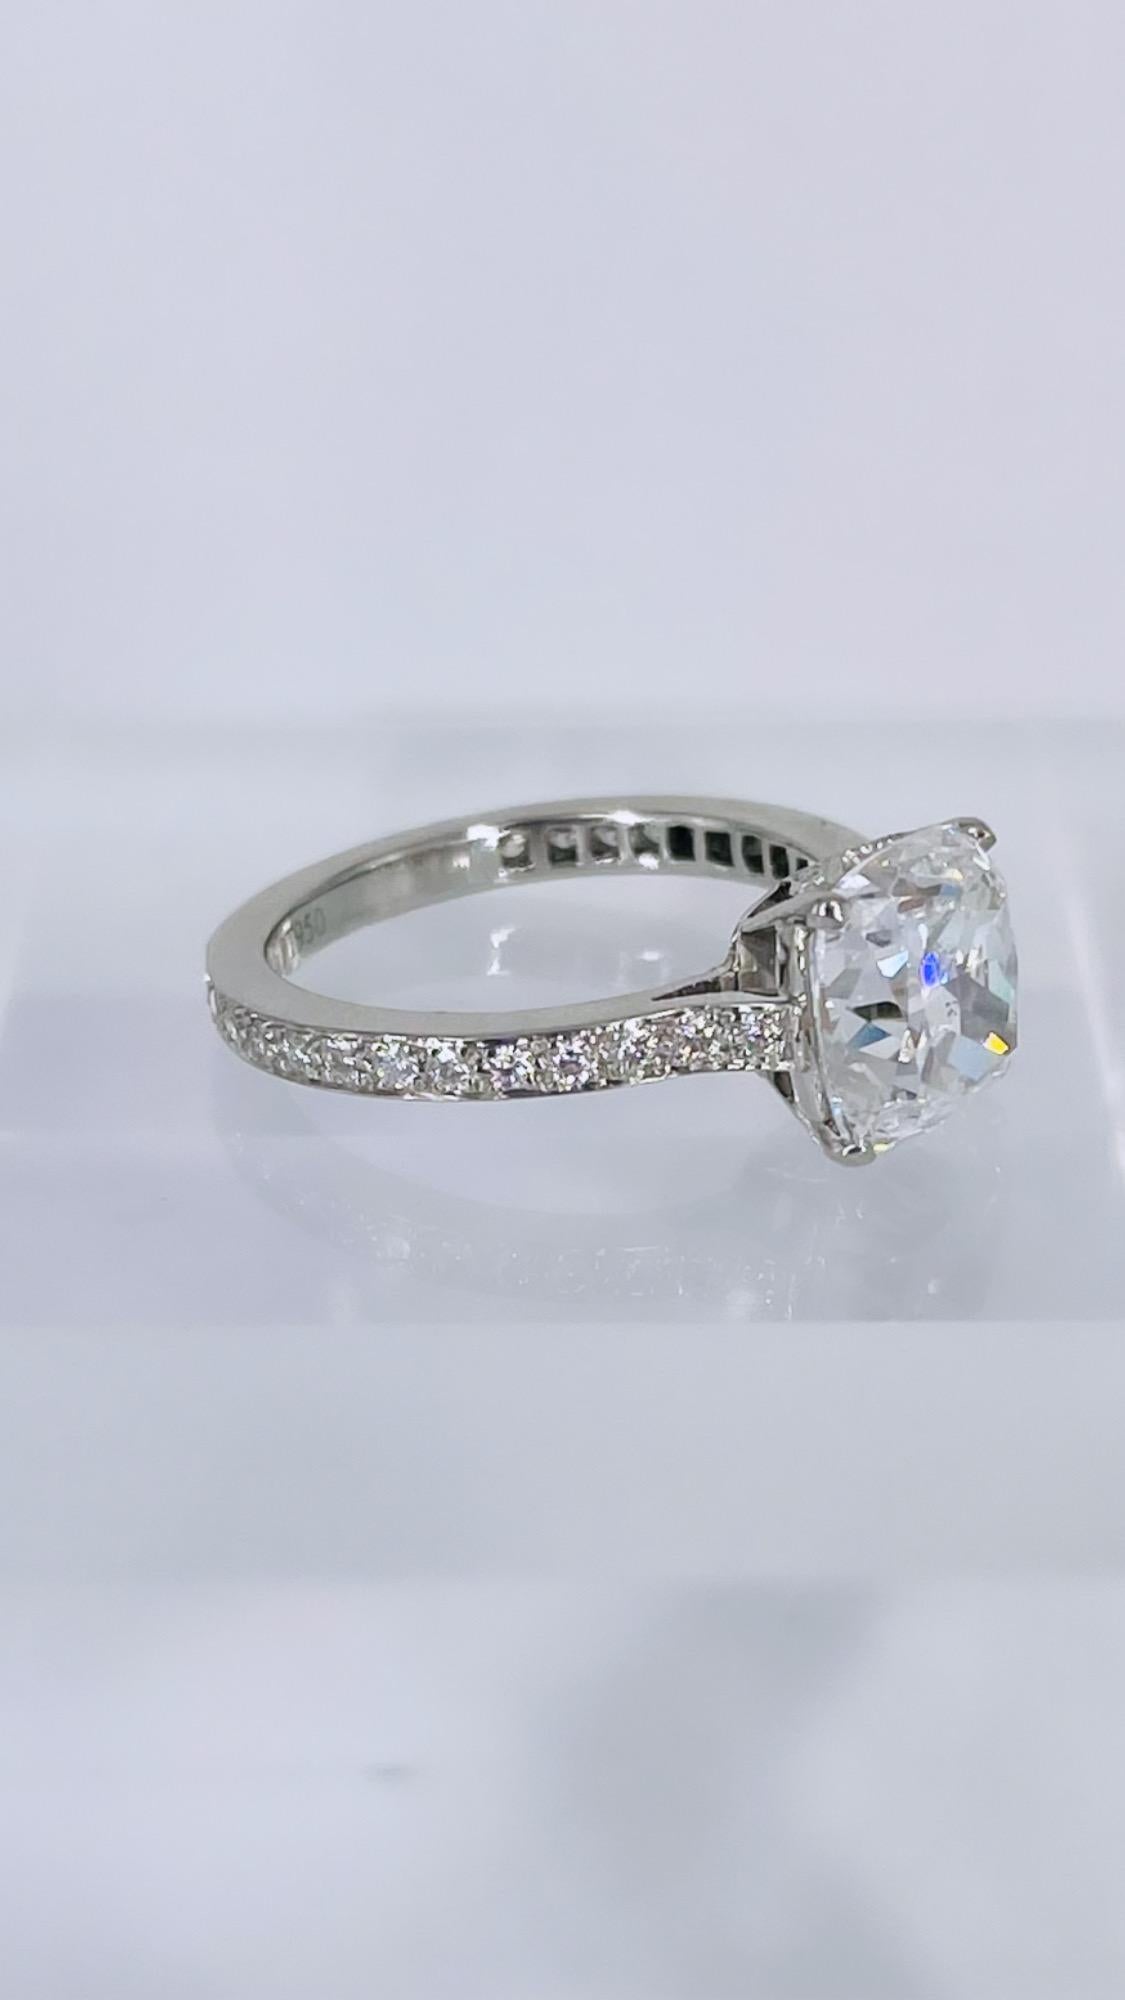 Cette bague de fiançailles de J. Birnbach est une pièce luxueuse inspirée par l'artisanat et les détails anciens. Le diamant central est un diamant coussin de 2,68 carats de taille brillant, certifié par la GIA de couleur E et de pureté SI1. Les